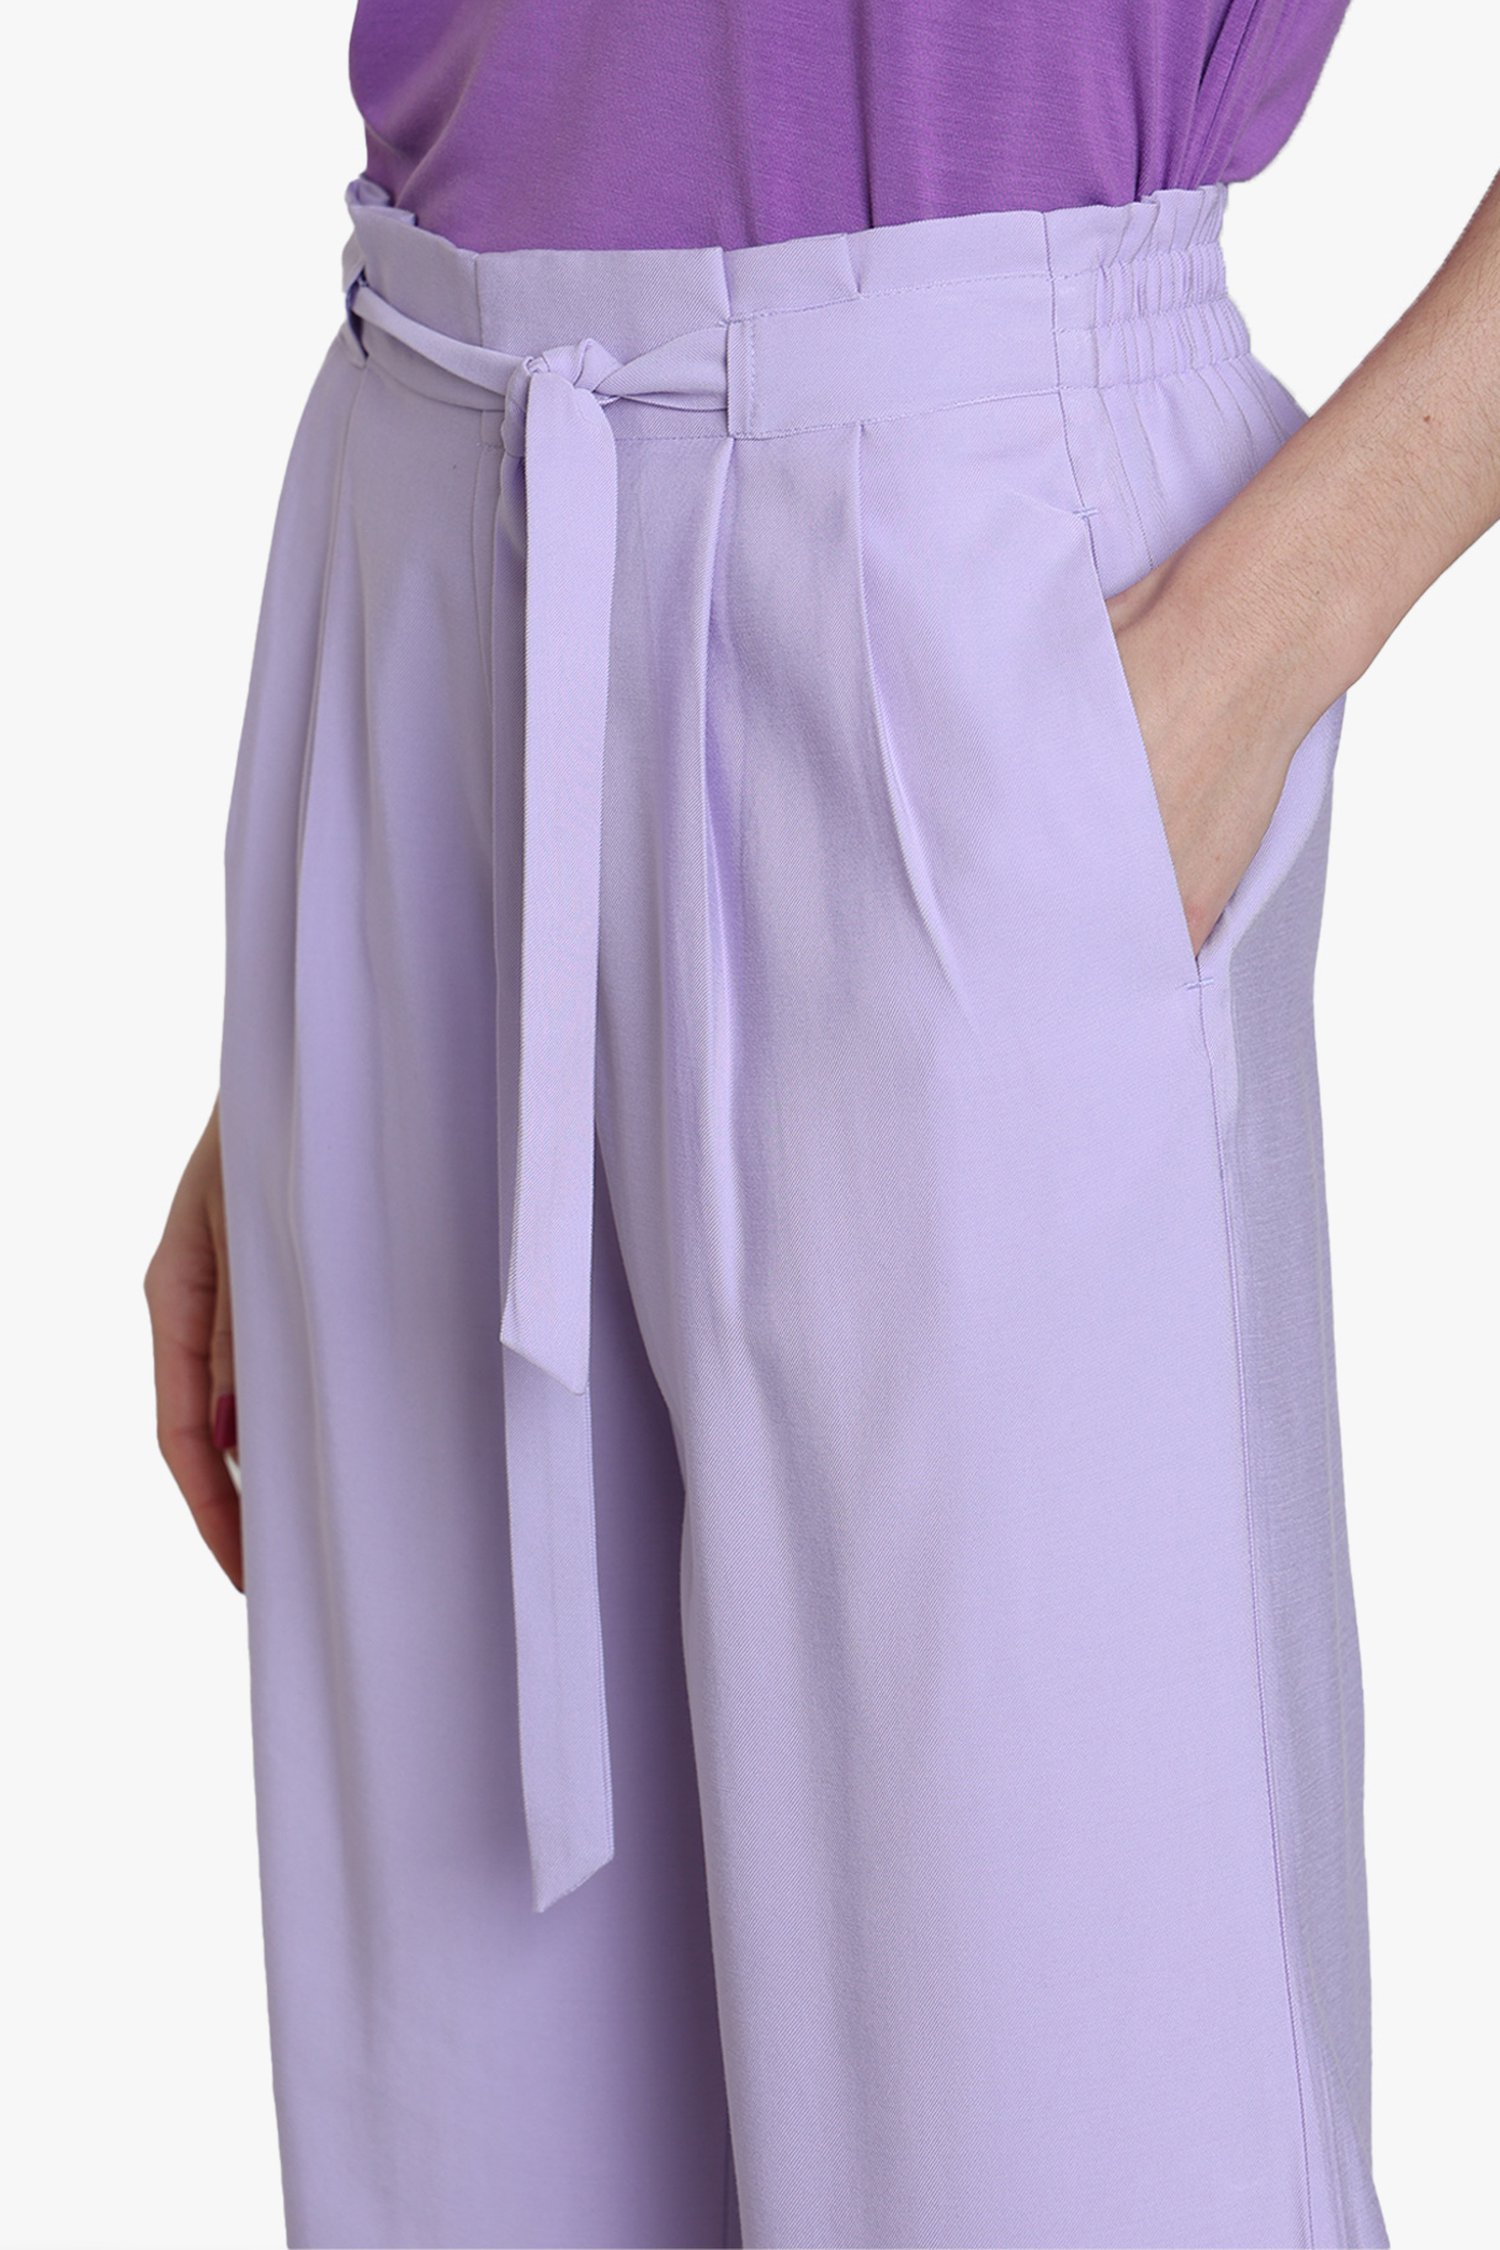 Reorganiseren voor de hand liggend Spanning Lila broek met taillelint - straight fit van Louise | 5975301 | e5